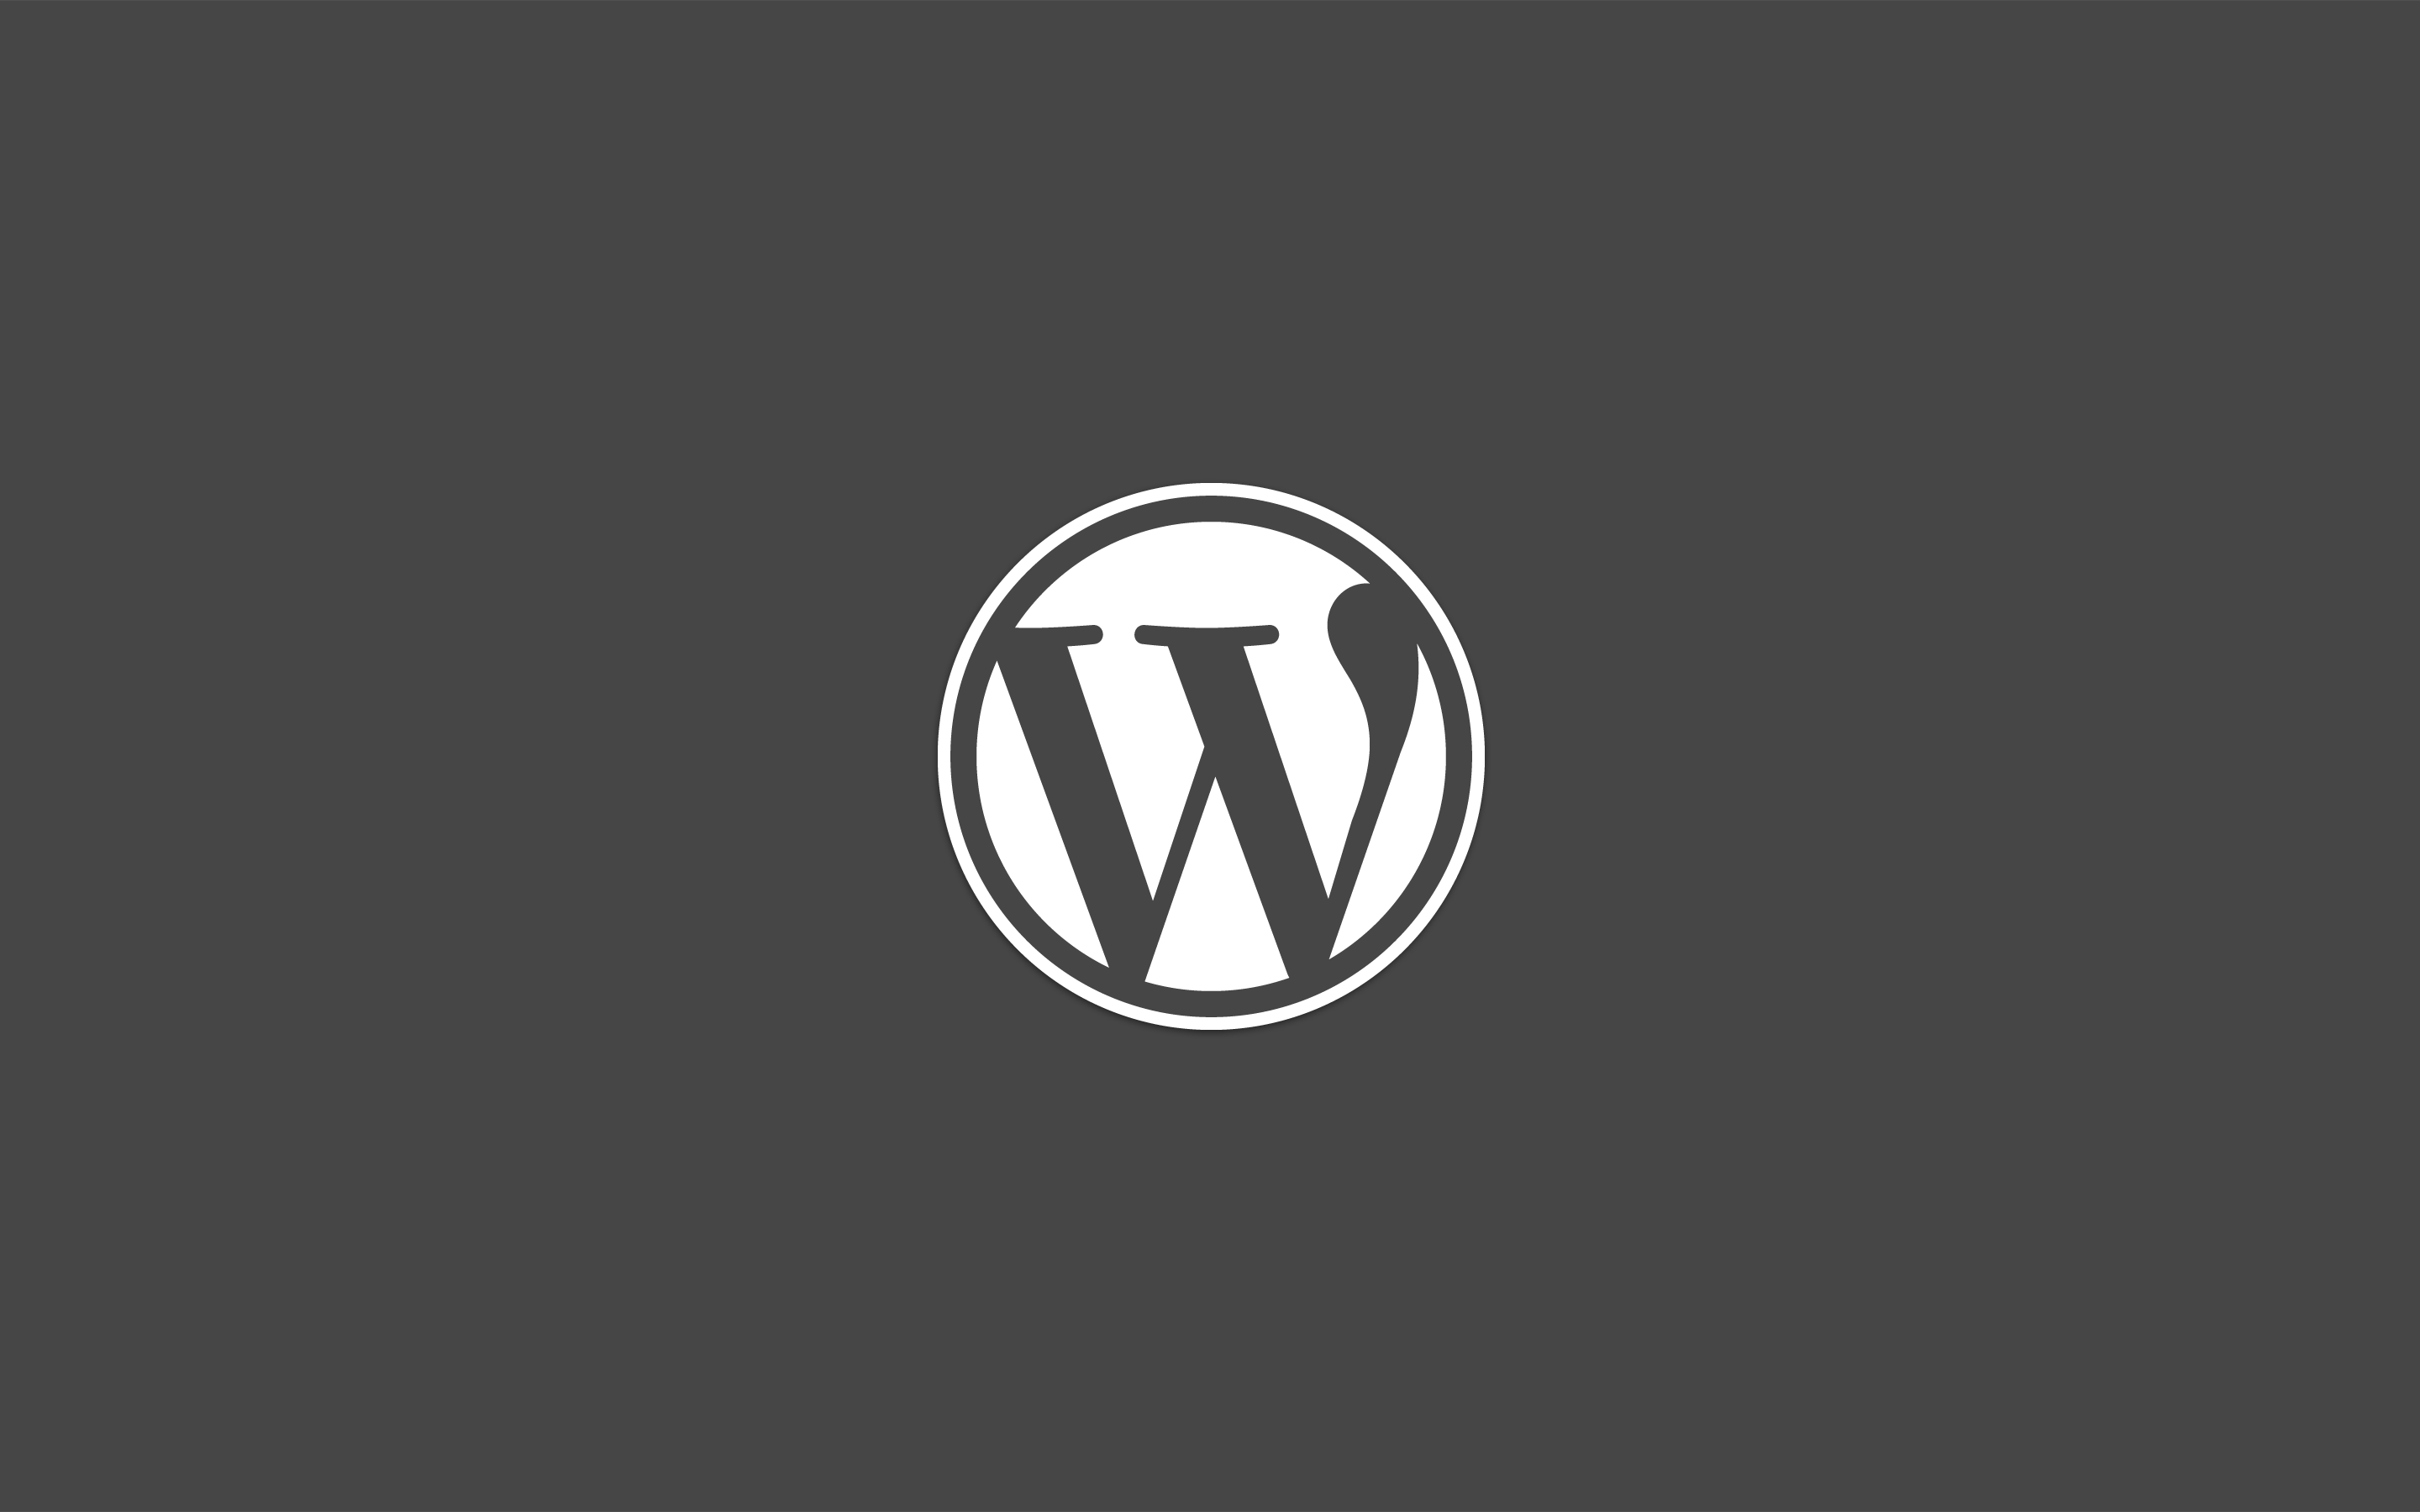 Wordpress your. Вордпресс. Вордпресс логотип. WORDPRESS картинки. Иконка WORDPRESS.